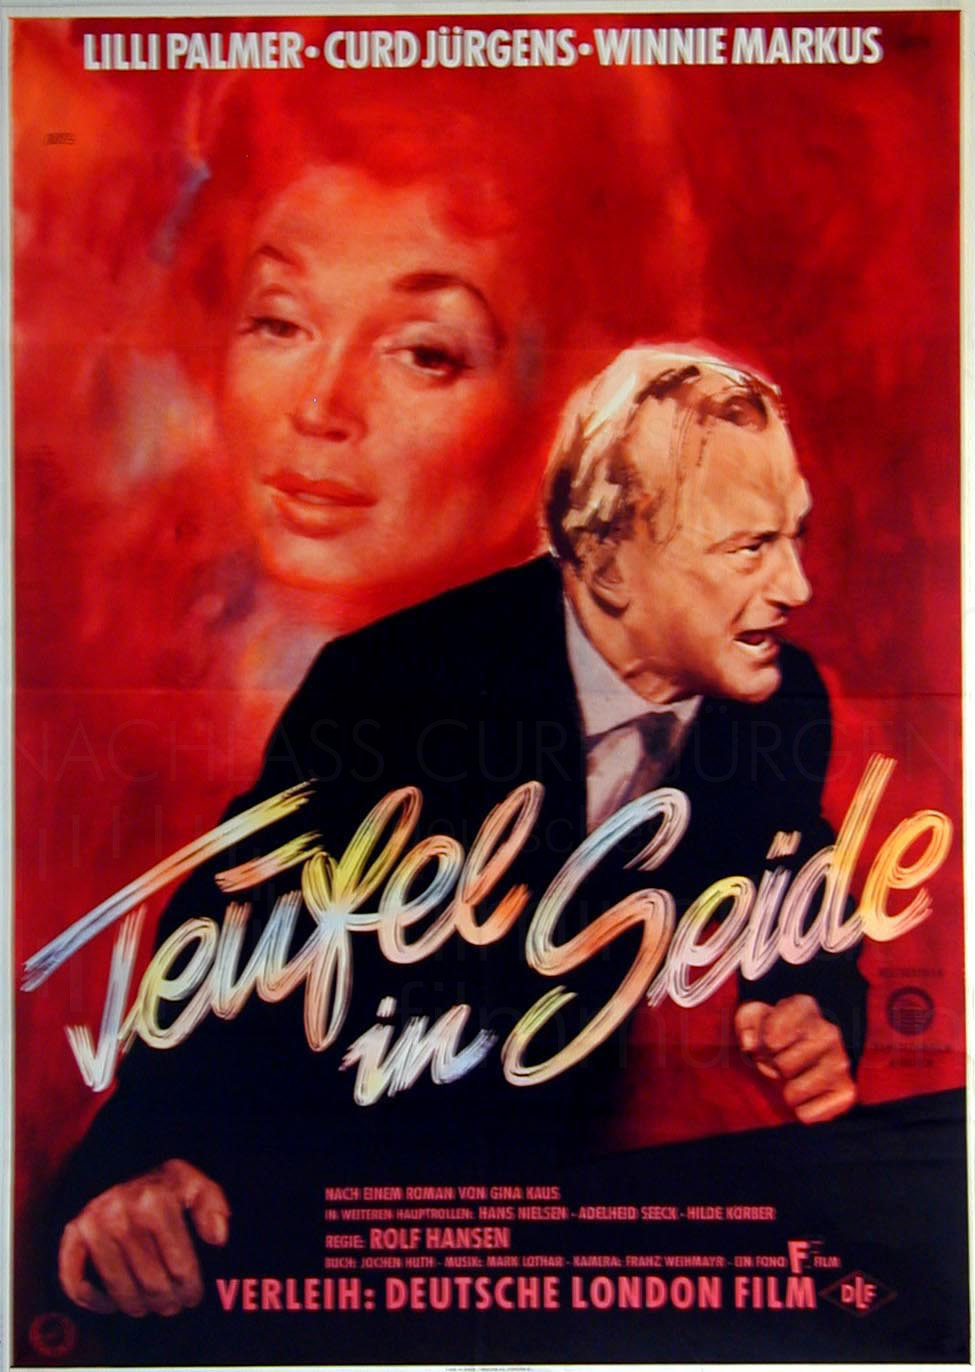 TEUFEL IN SEIDE (1956)